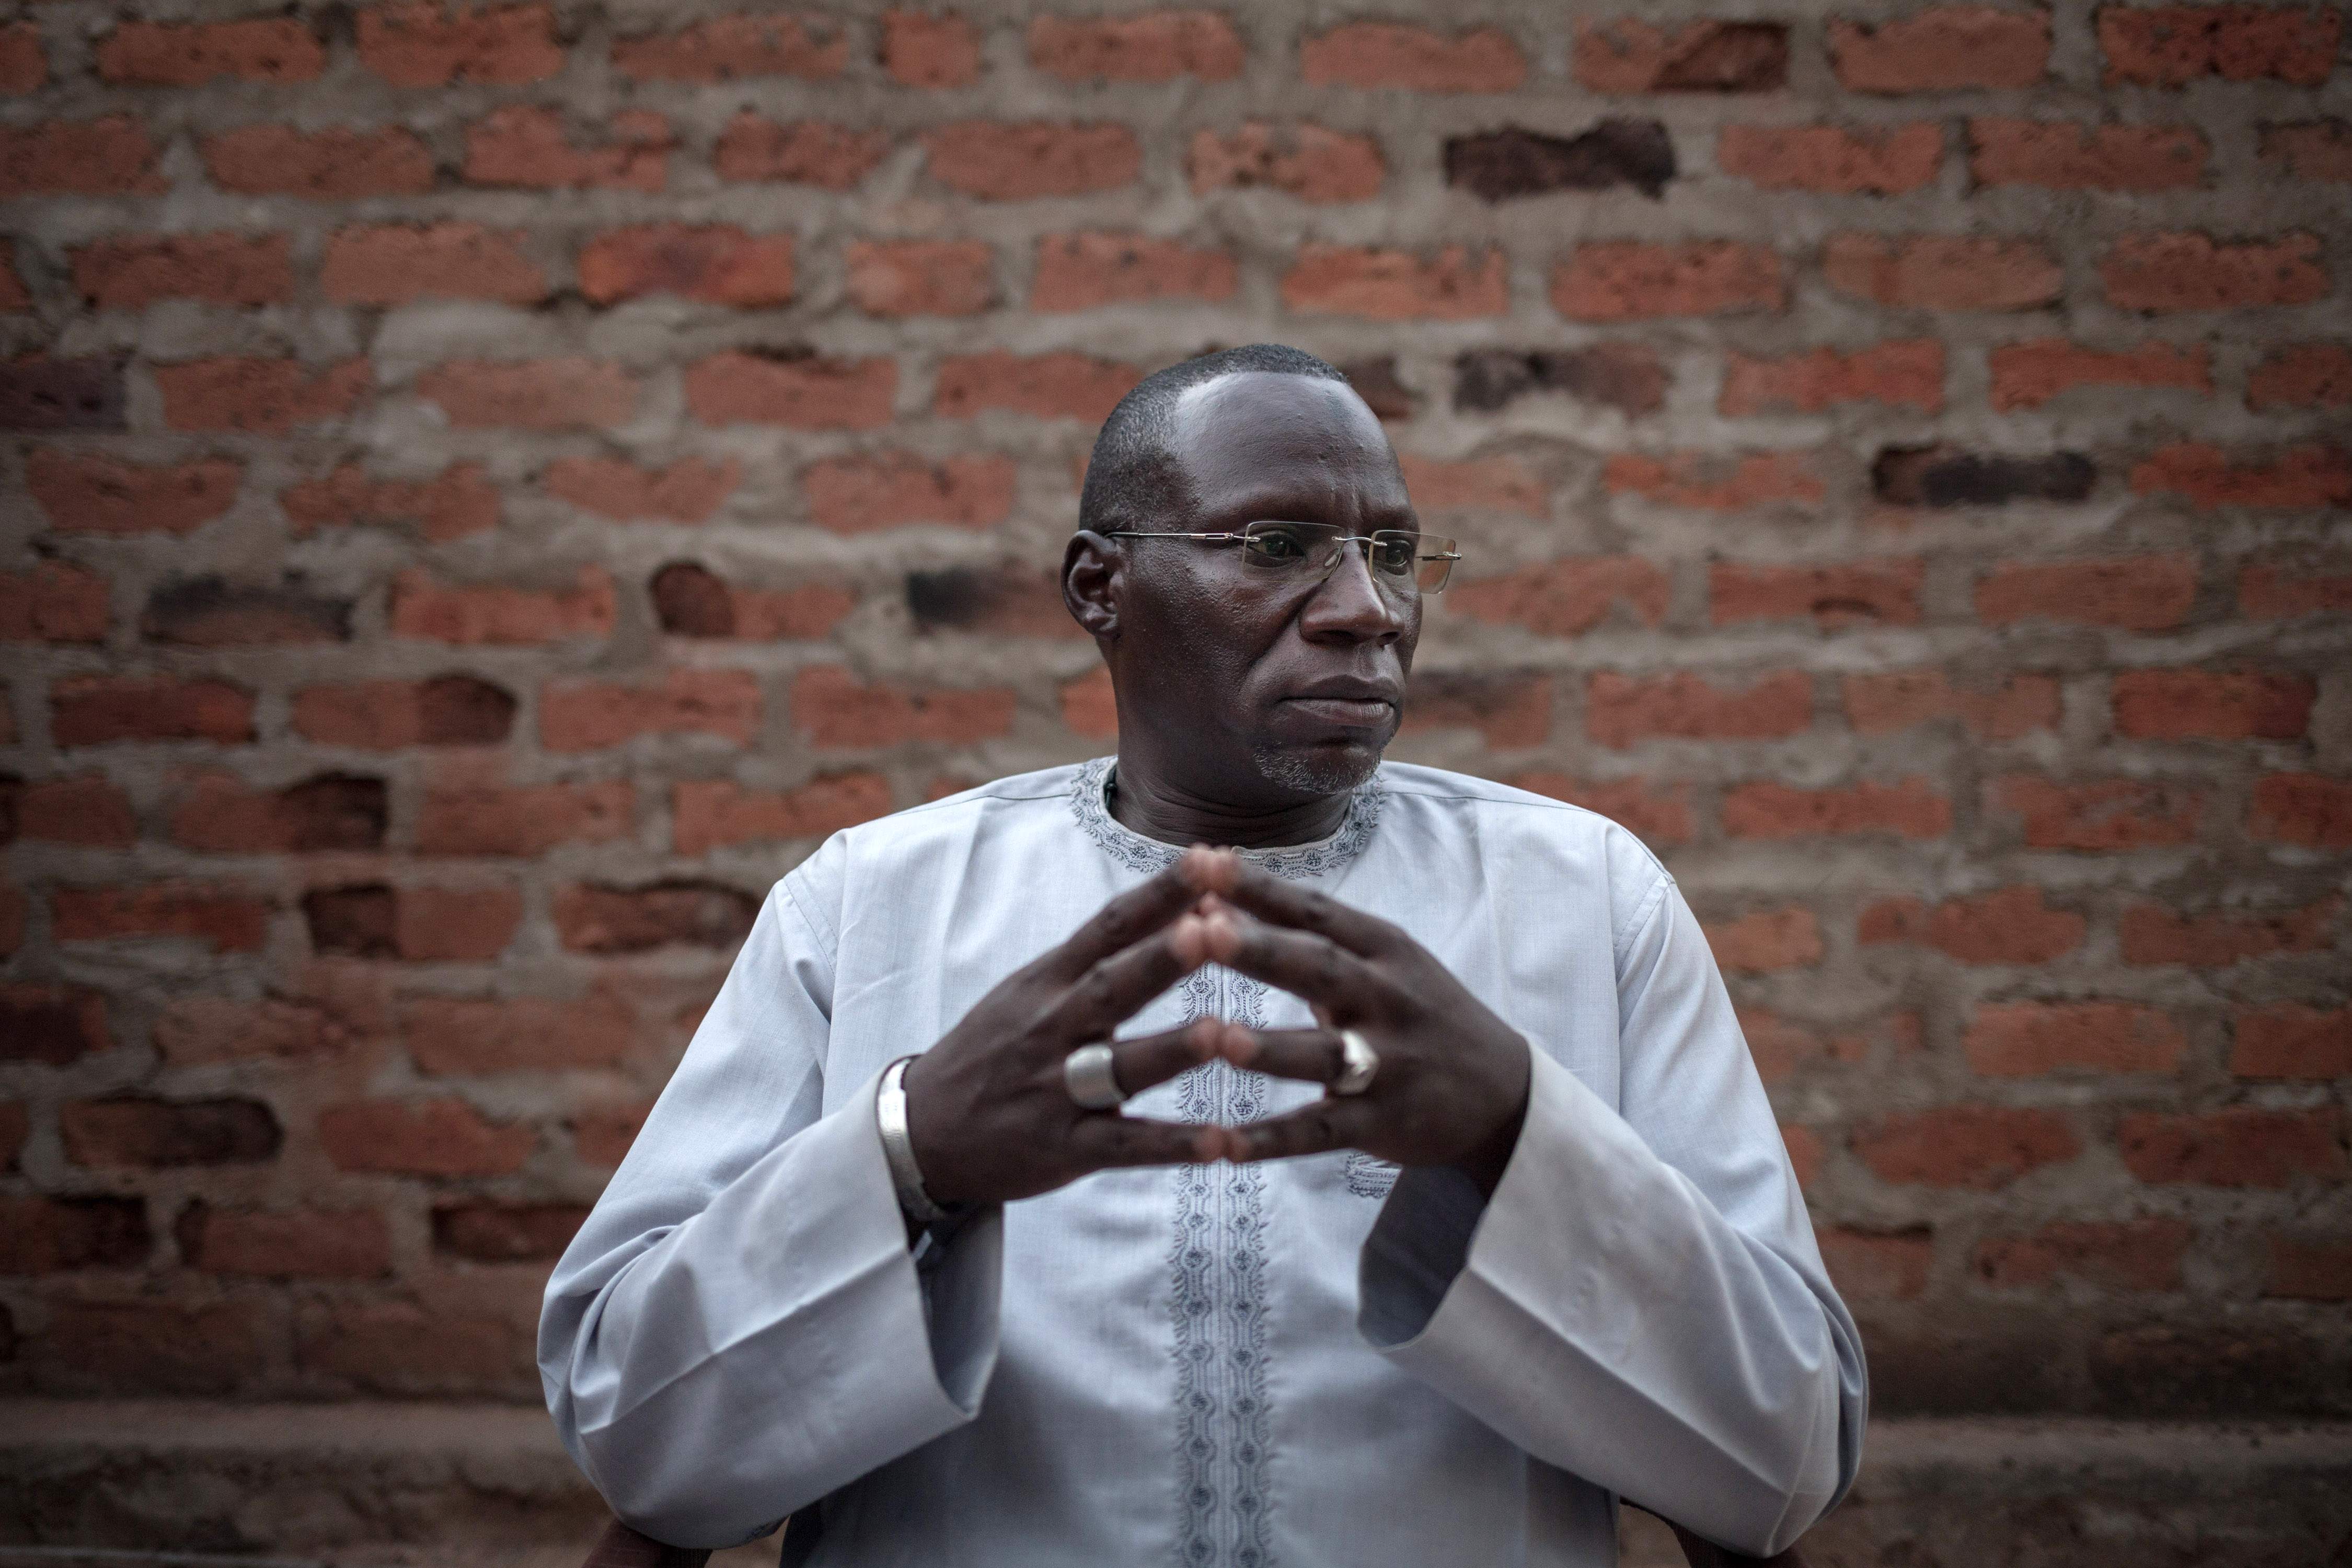 نور الدين آدم أحد قادة واحدة من المجموعات المسلحة الناشطة فى جمهورية افريقيا الوسطى